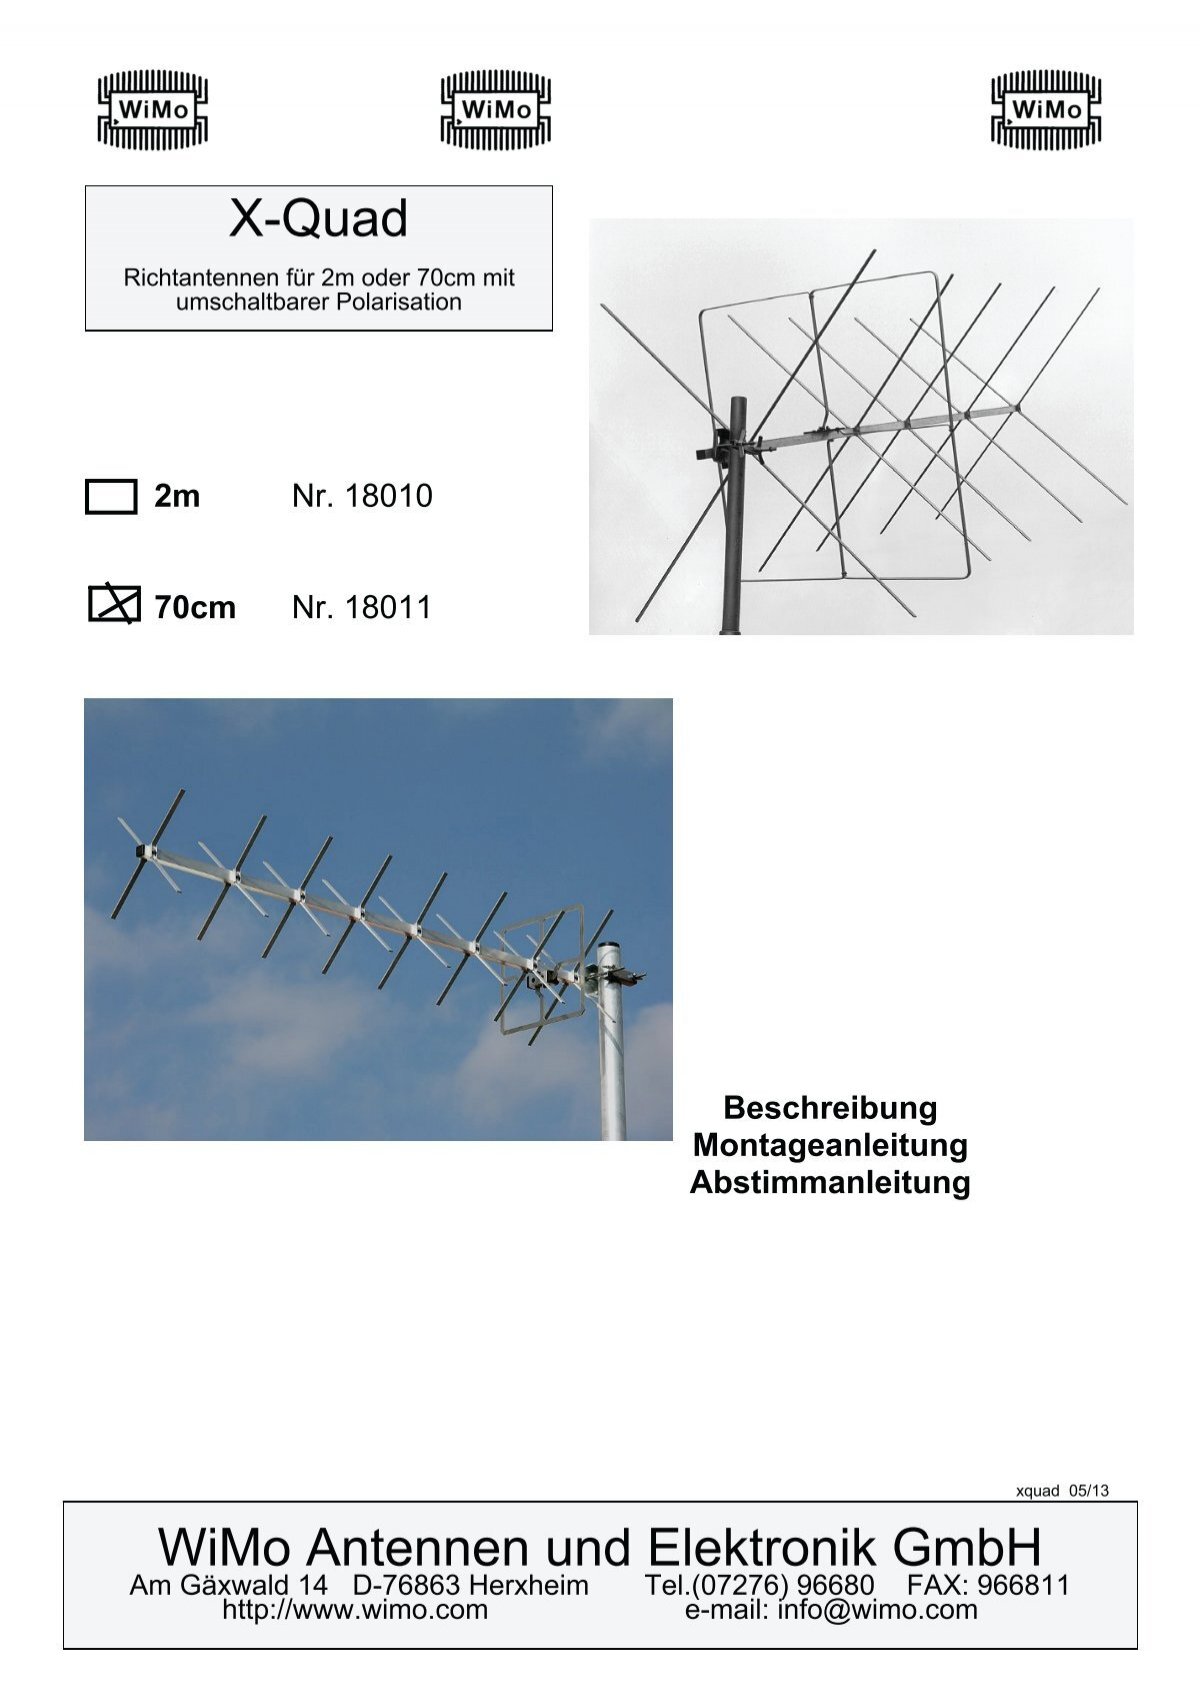 X-Quad Antennen für 2m und 70cm